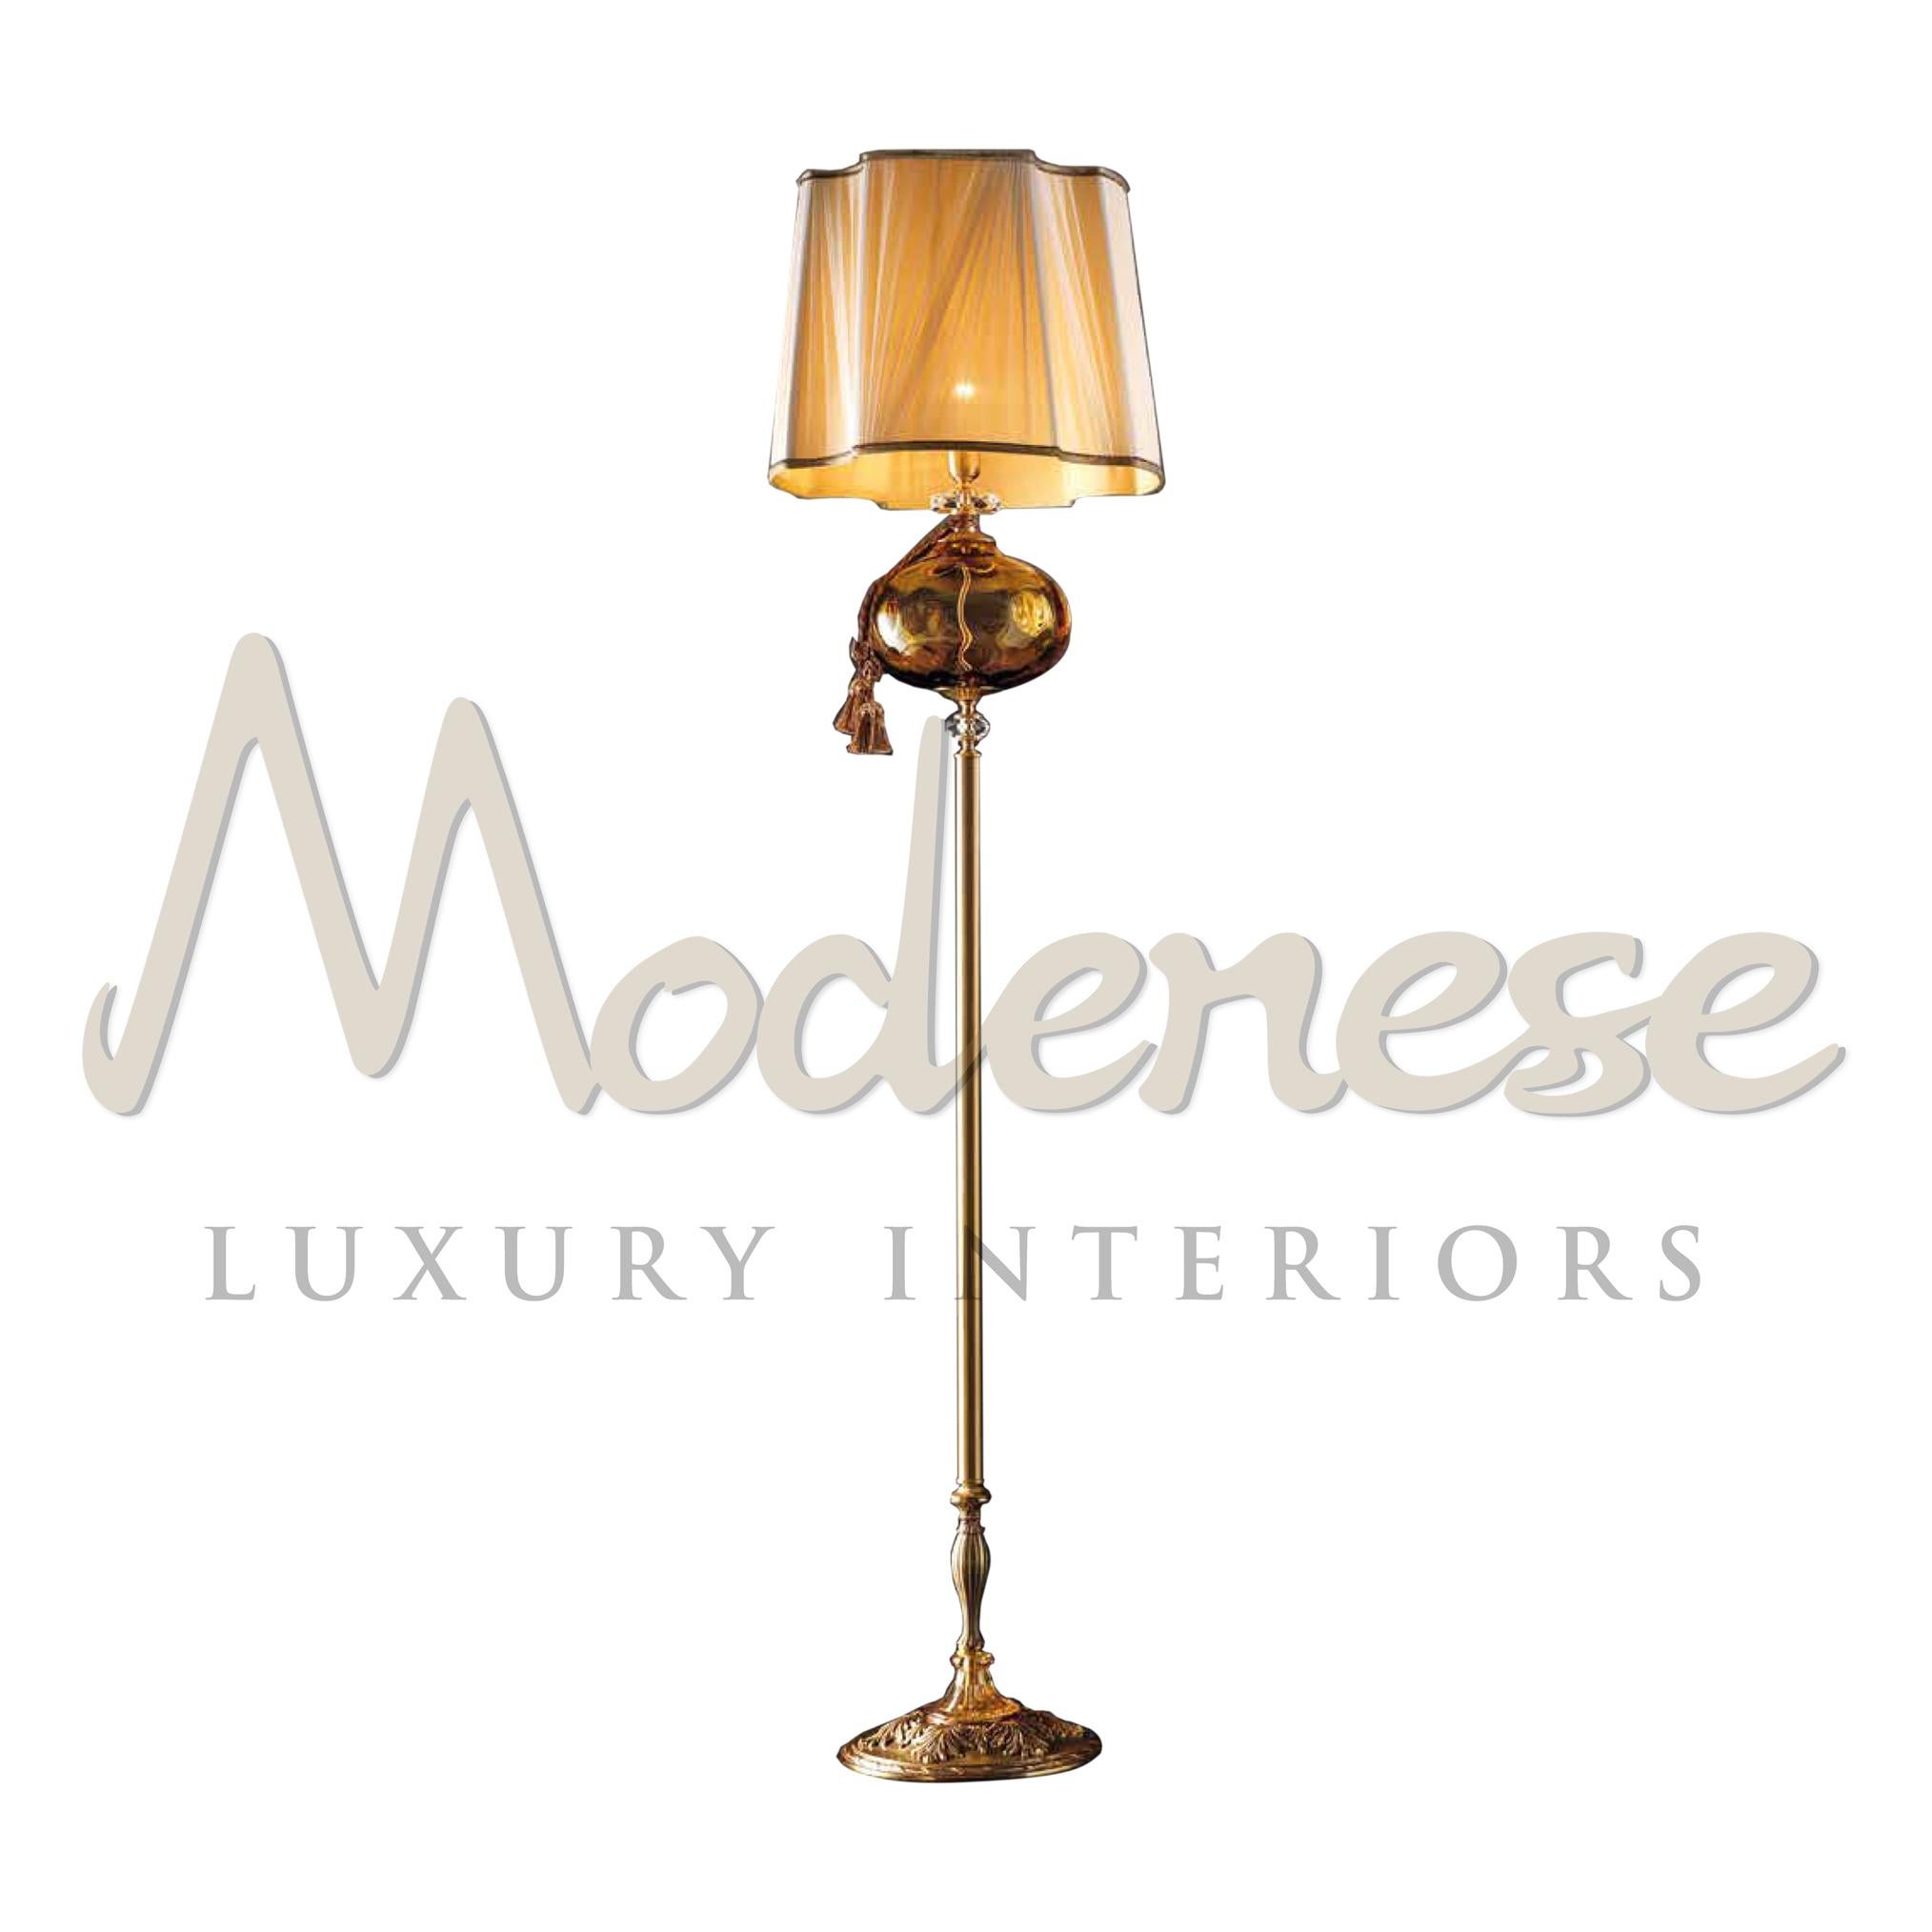 Die proportionale Silhouette der unterschiedlich dicken Elemente, die den Rahmen für diese Linie bilden, ist das Markenzeichen der Modenese Gastone luxury Interiors Leuchten. Diese Leuchte ist ein Unikat: Sie ist aus französisch-goldenem,